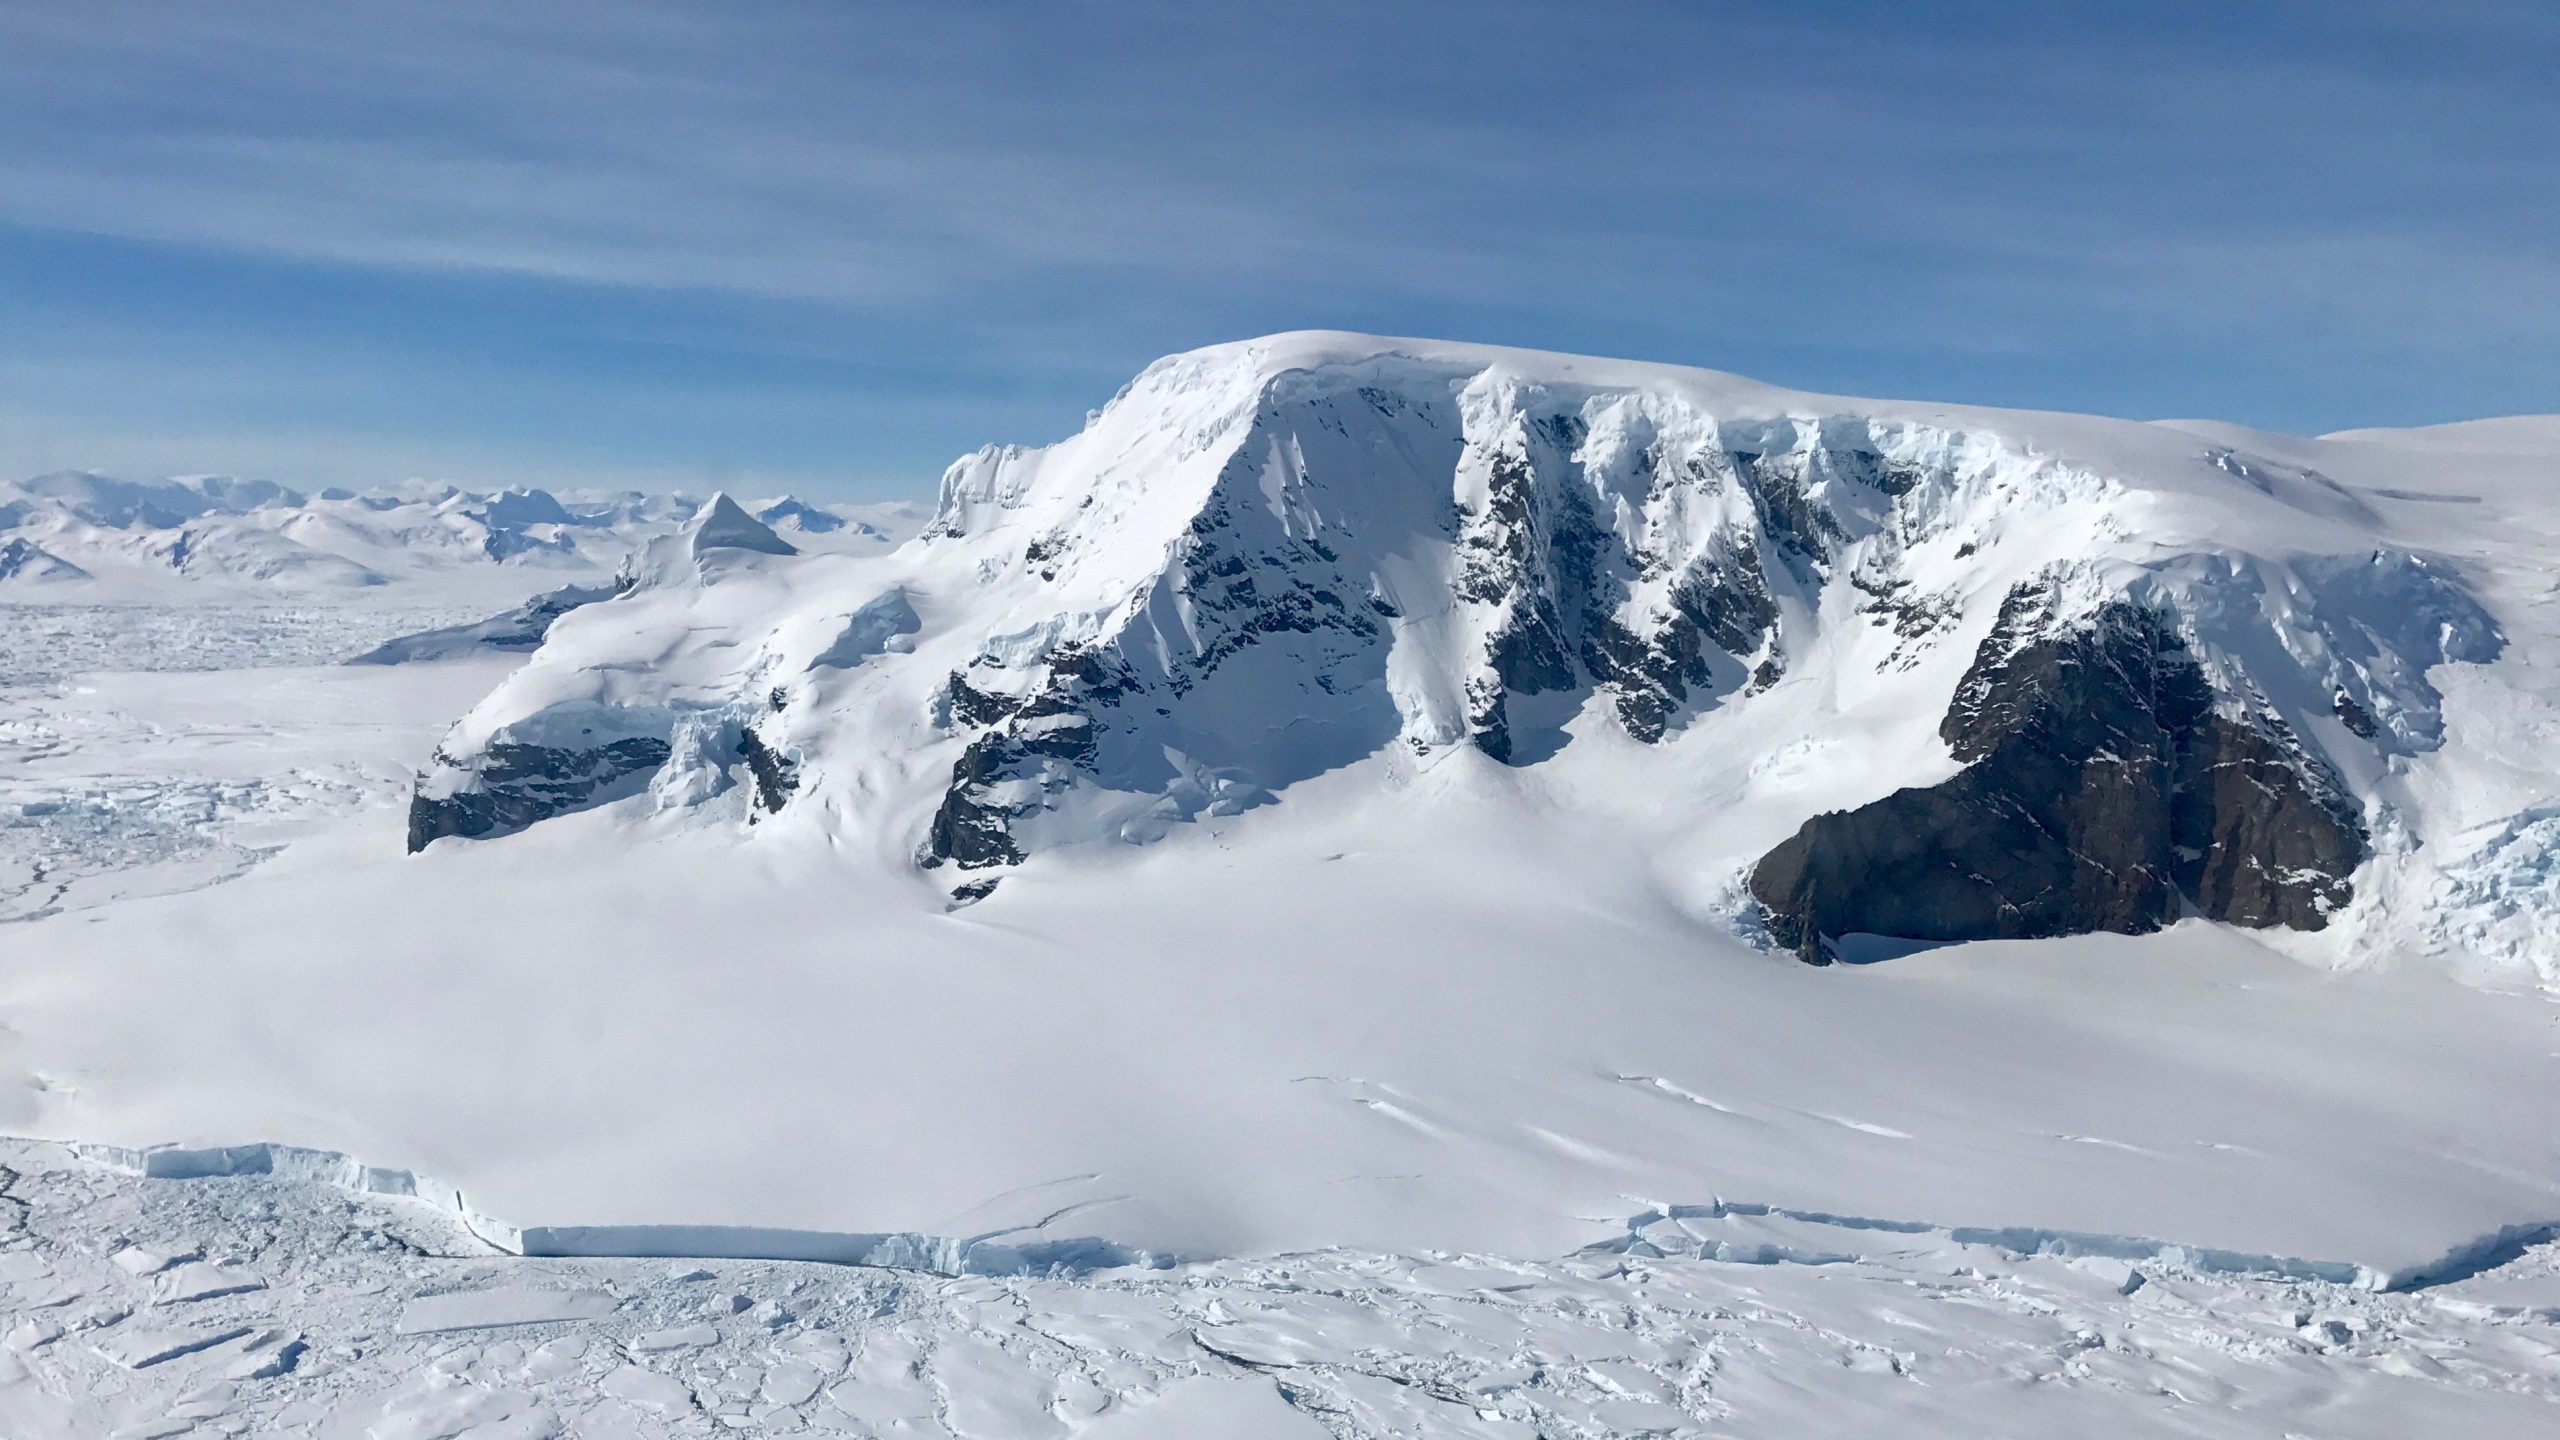 Ανταρκτική: Γιατί είναι απαγορευμένη περιοχή; (βίντεο)